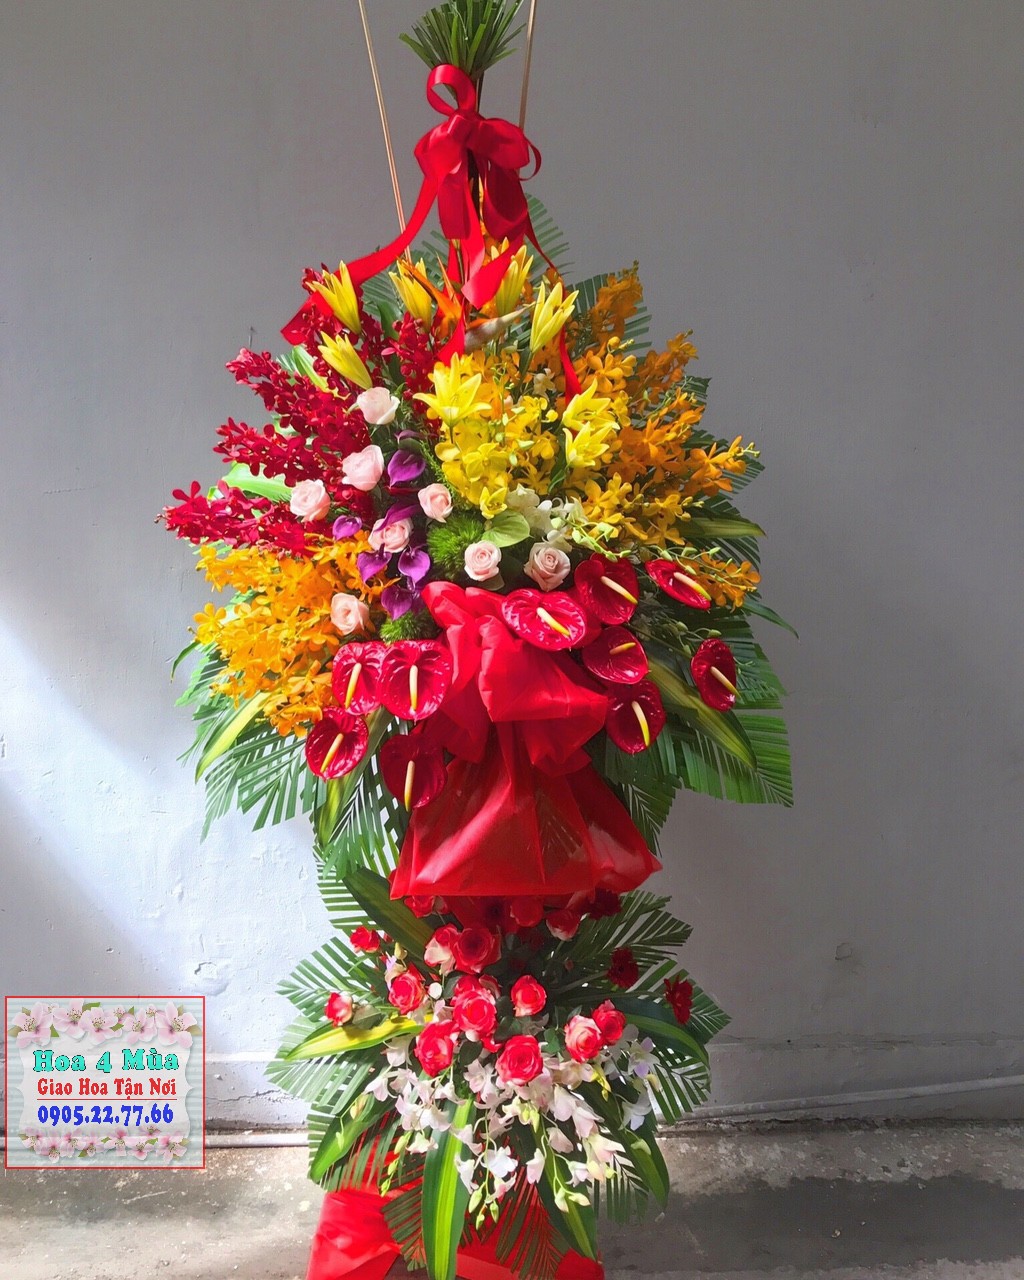 Mẫu hoa khai trương đẹp mắt tại điện hoa Huyện Châu Thành, Đồng Tháp